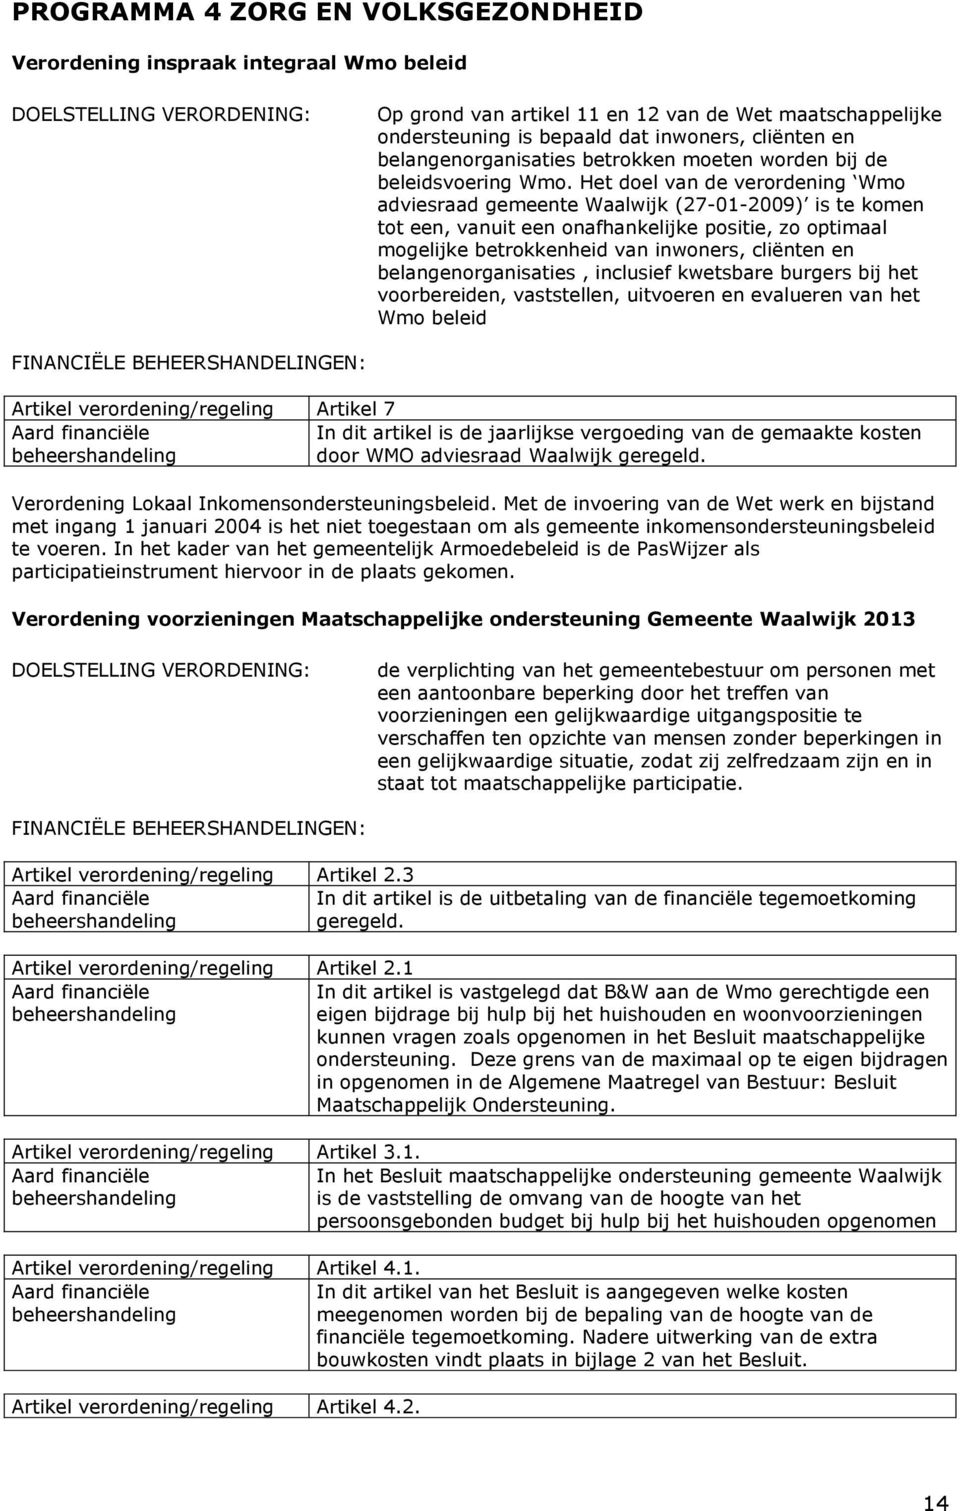 Het doel van de verordening Wmo adviesraad gemeente Waalwijk (27-01-2009) is te komen tot een, vanuit een onafhankelijke positie, zo optimaal mogelijke betrokkenheid van inwoners, cliënten en